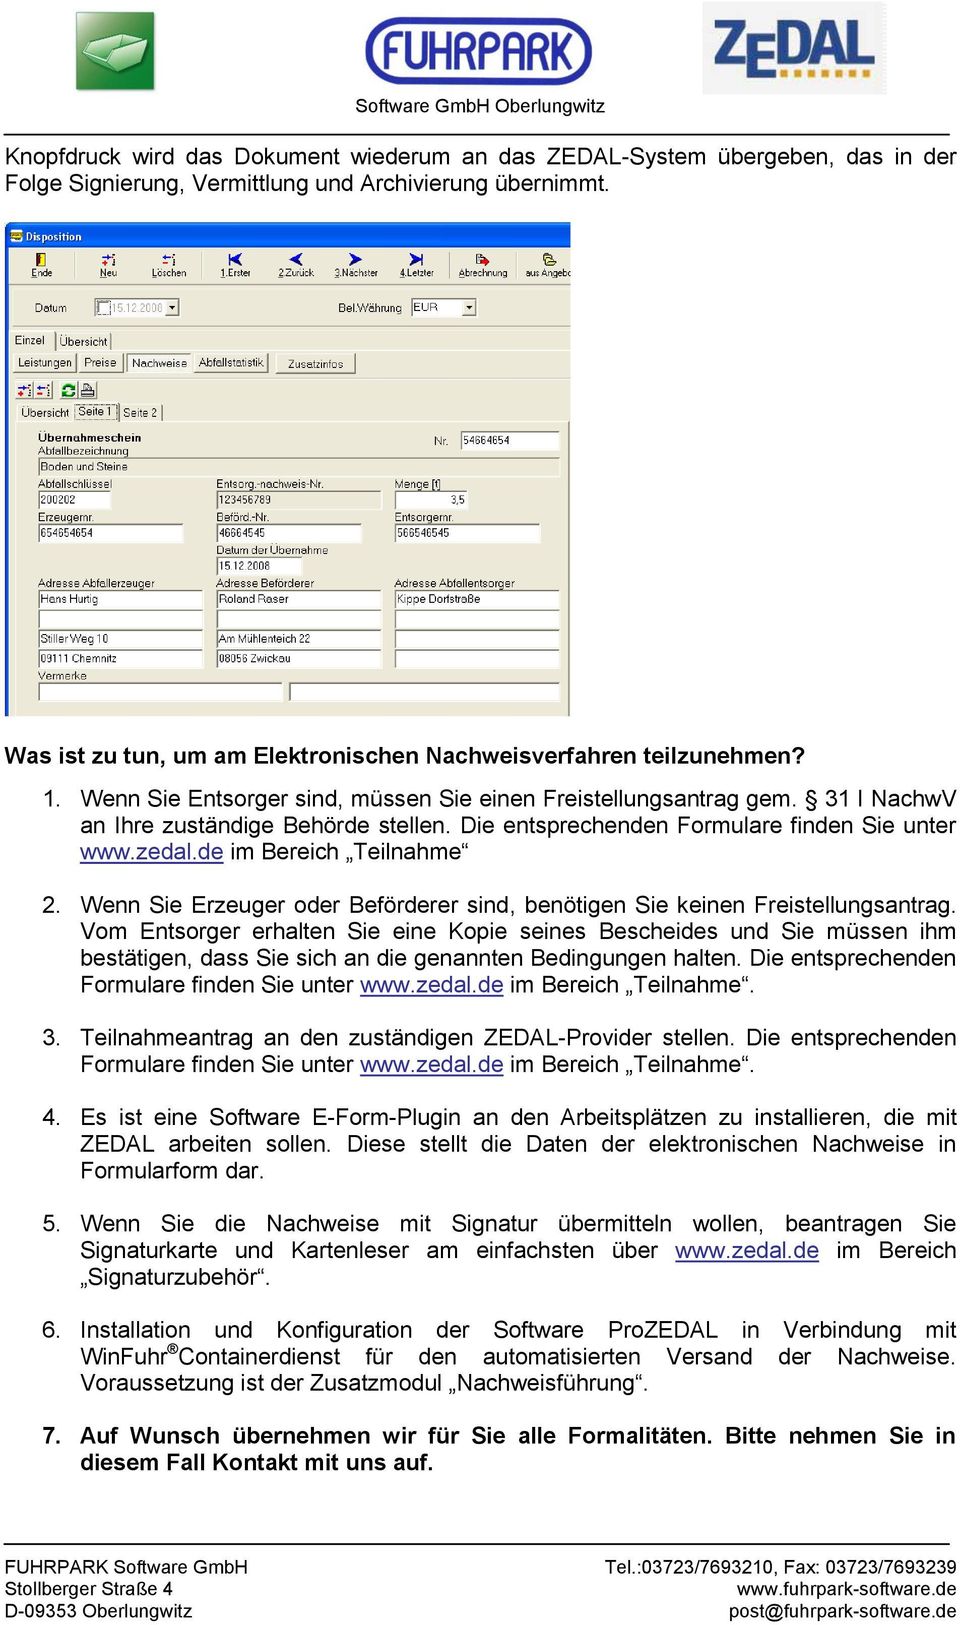 Die entsprechenden Formulare finden Sie unter www.zedal.de im Bereich Teilnahme 2. Wenn Sie Erzeuger oder Beförderer sind, benötigen Sie keinen Freistellungsantrag.